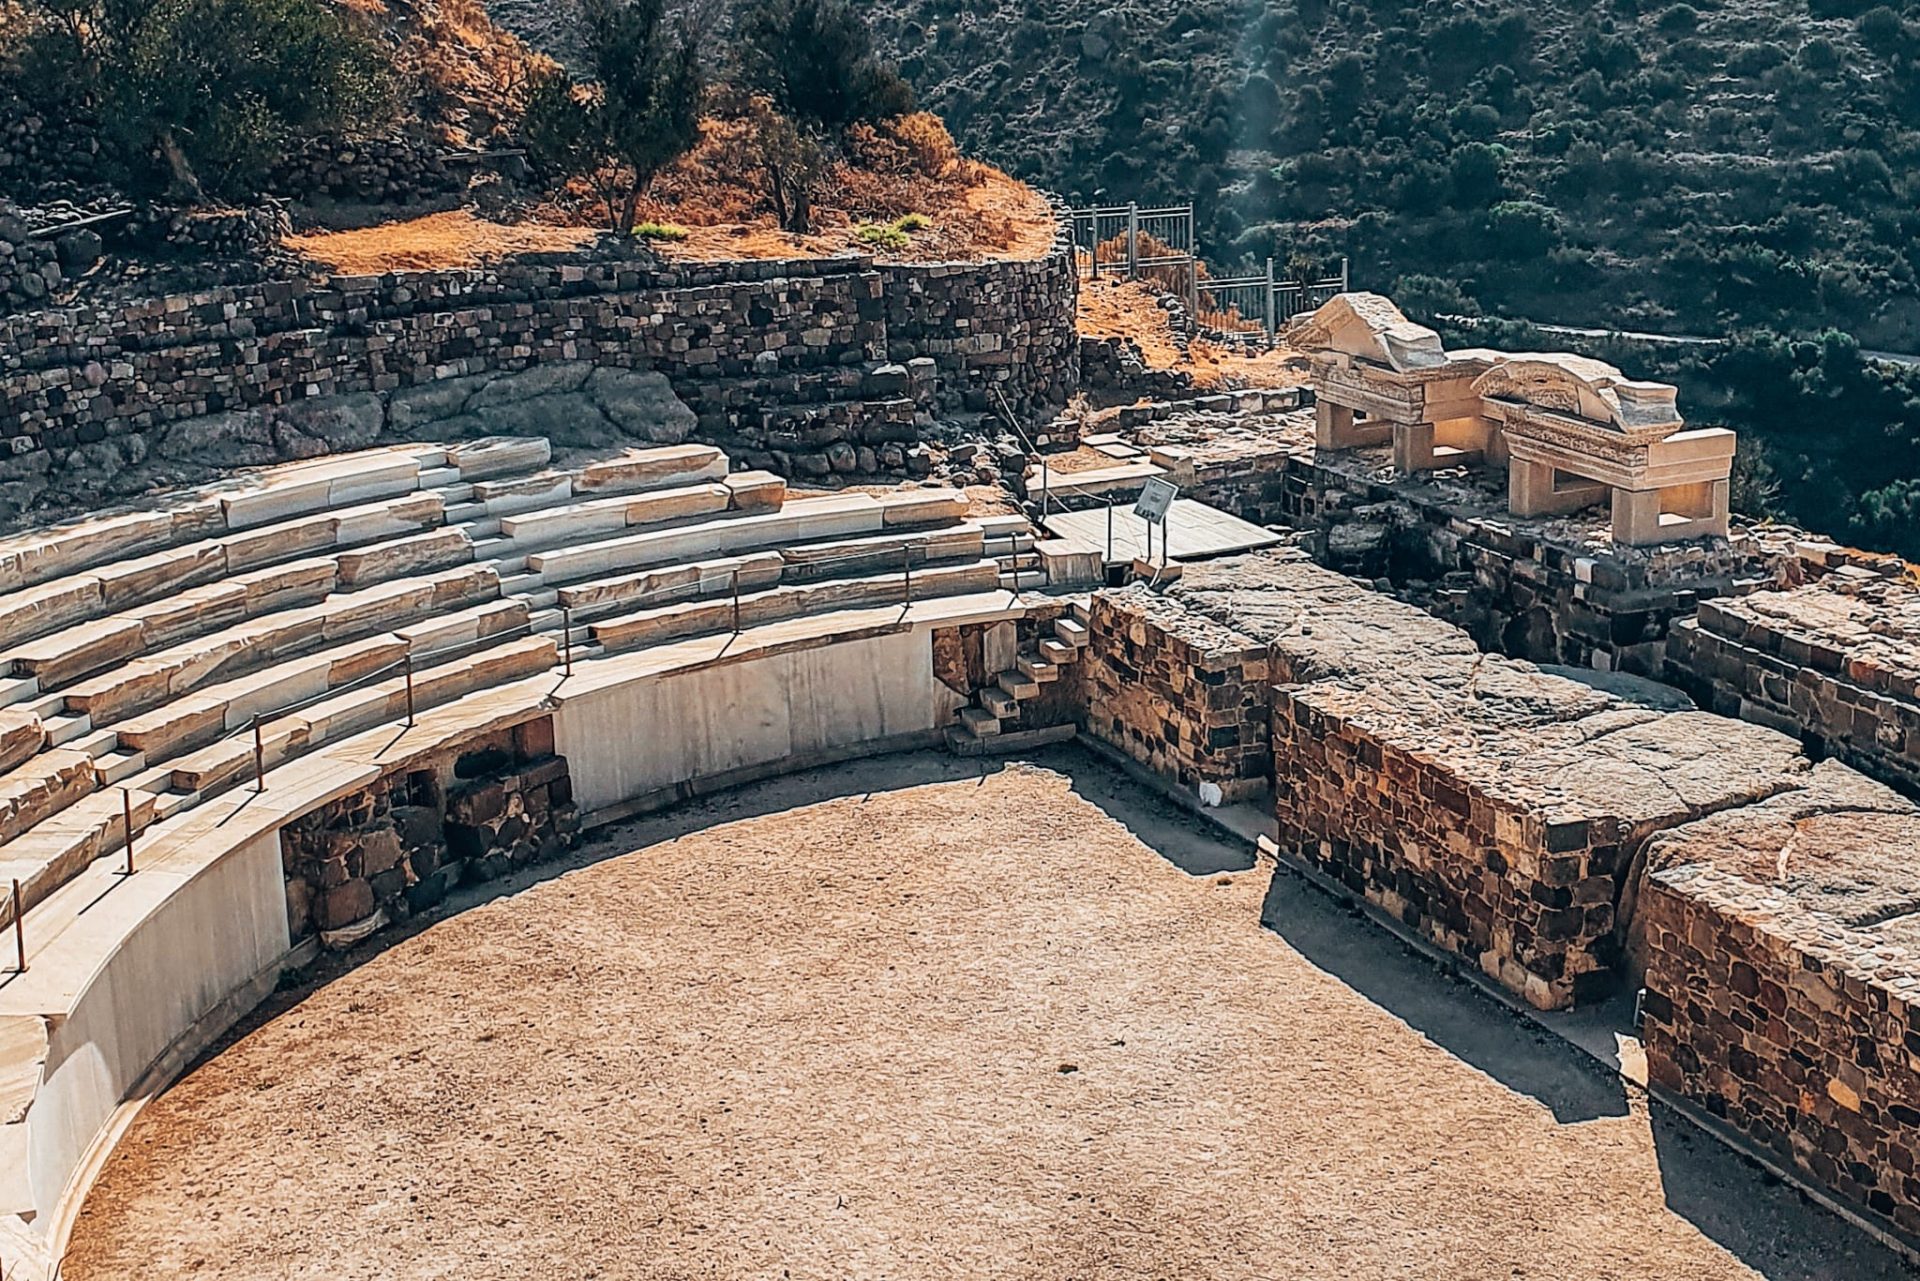 You shouldn't miss the ancient theater of Milos | Nicht verpassen solltest du die Ausgrabung des altgriechischen Theaters in Milos